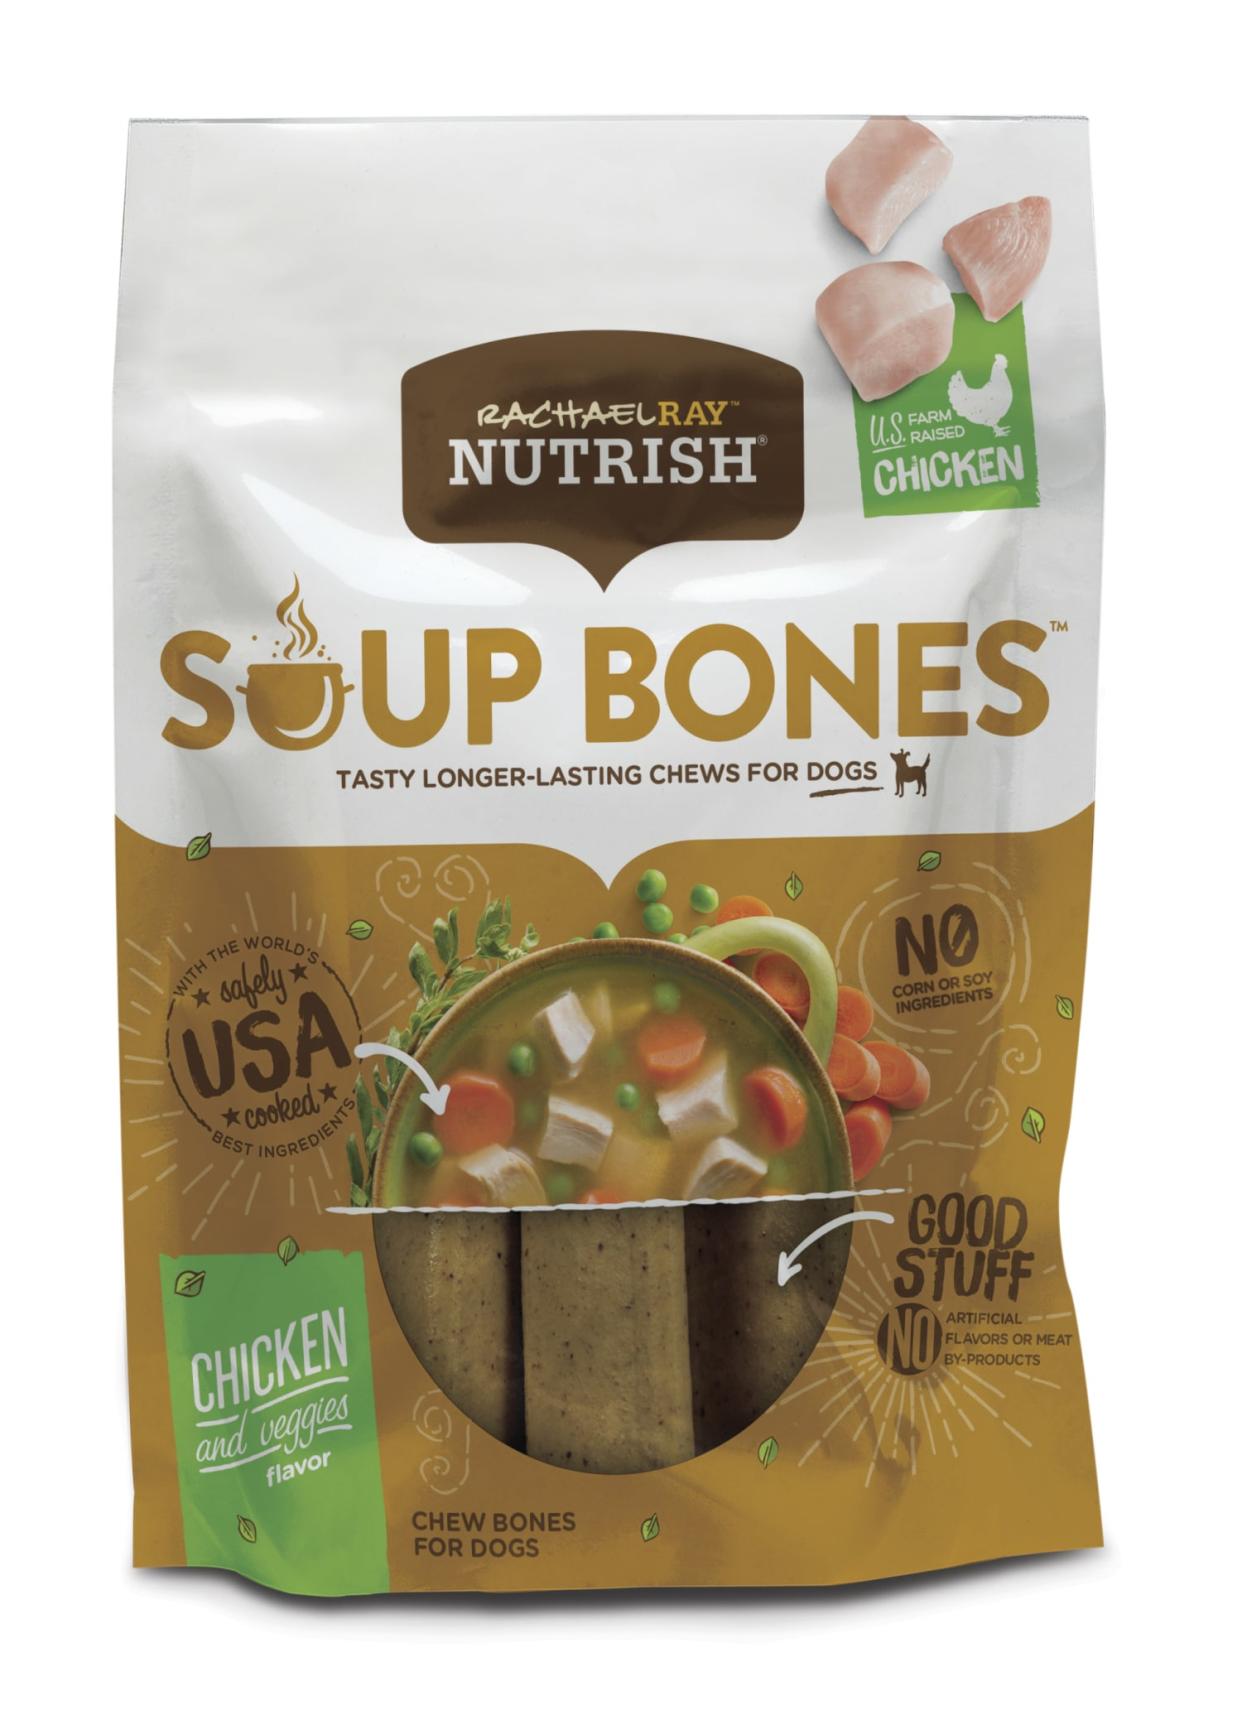 Rachael Ray Nutrish Soup Bones Chicken & Veggies Flavor Chews ('Multiple' Murder Victims Found in Calif. Home / 'Multiple' Murder Victims Found in Calif. Home)